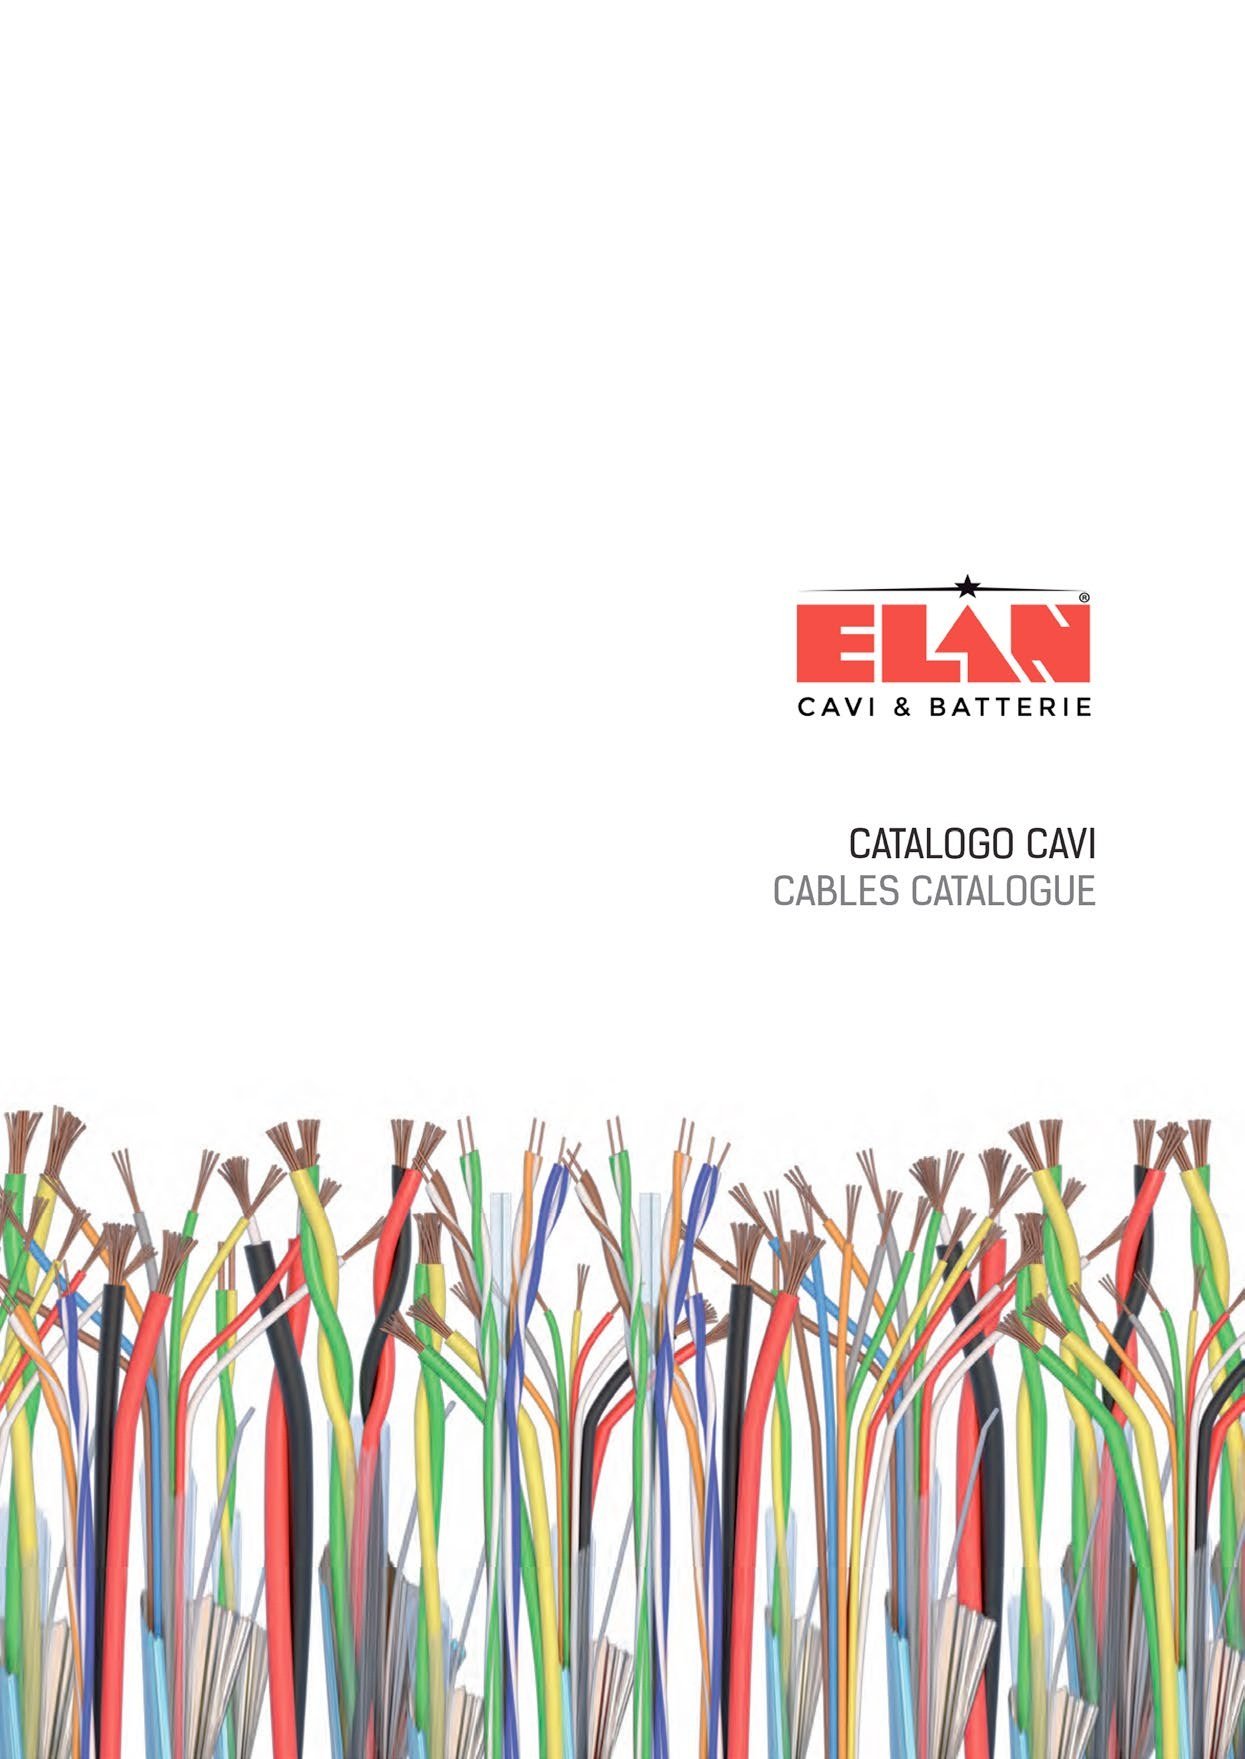 catalogo cavi Elan 2016